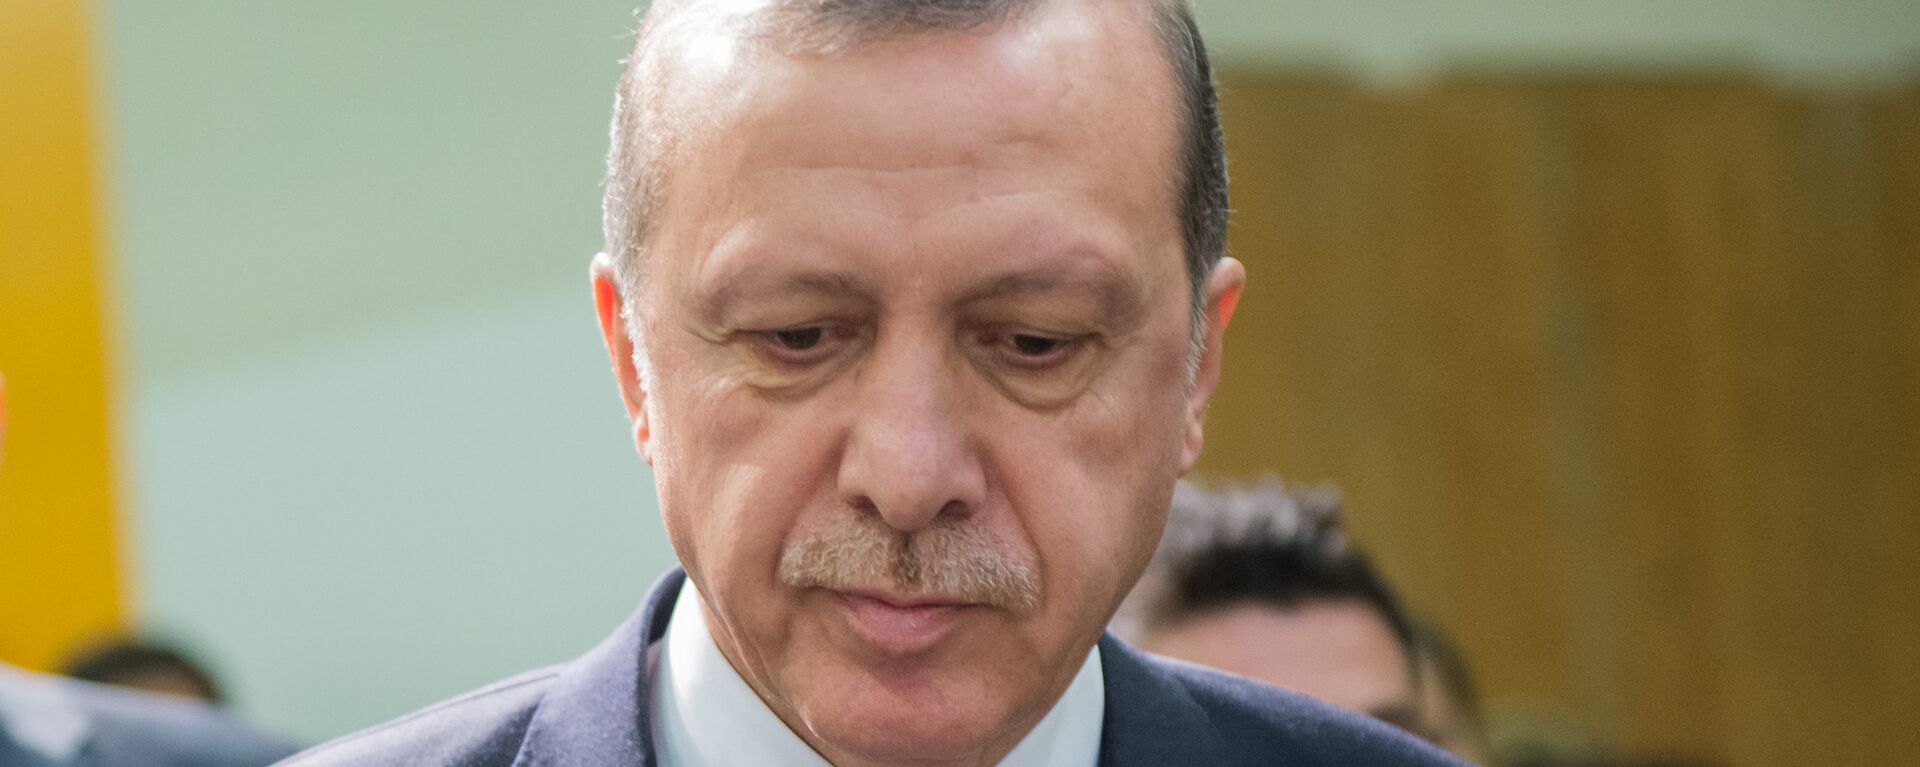 Turcijas prezidents Redžeps Tajips Erdogans. Foto no arhīva - Sputnik Latvija, 1920, 20.11.2016